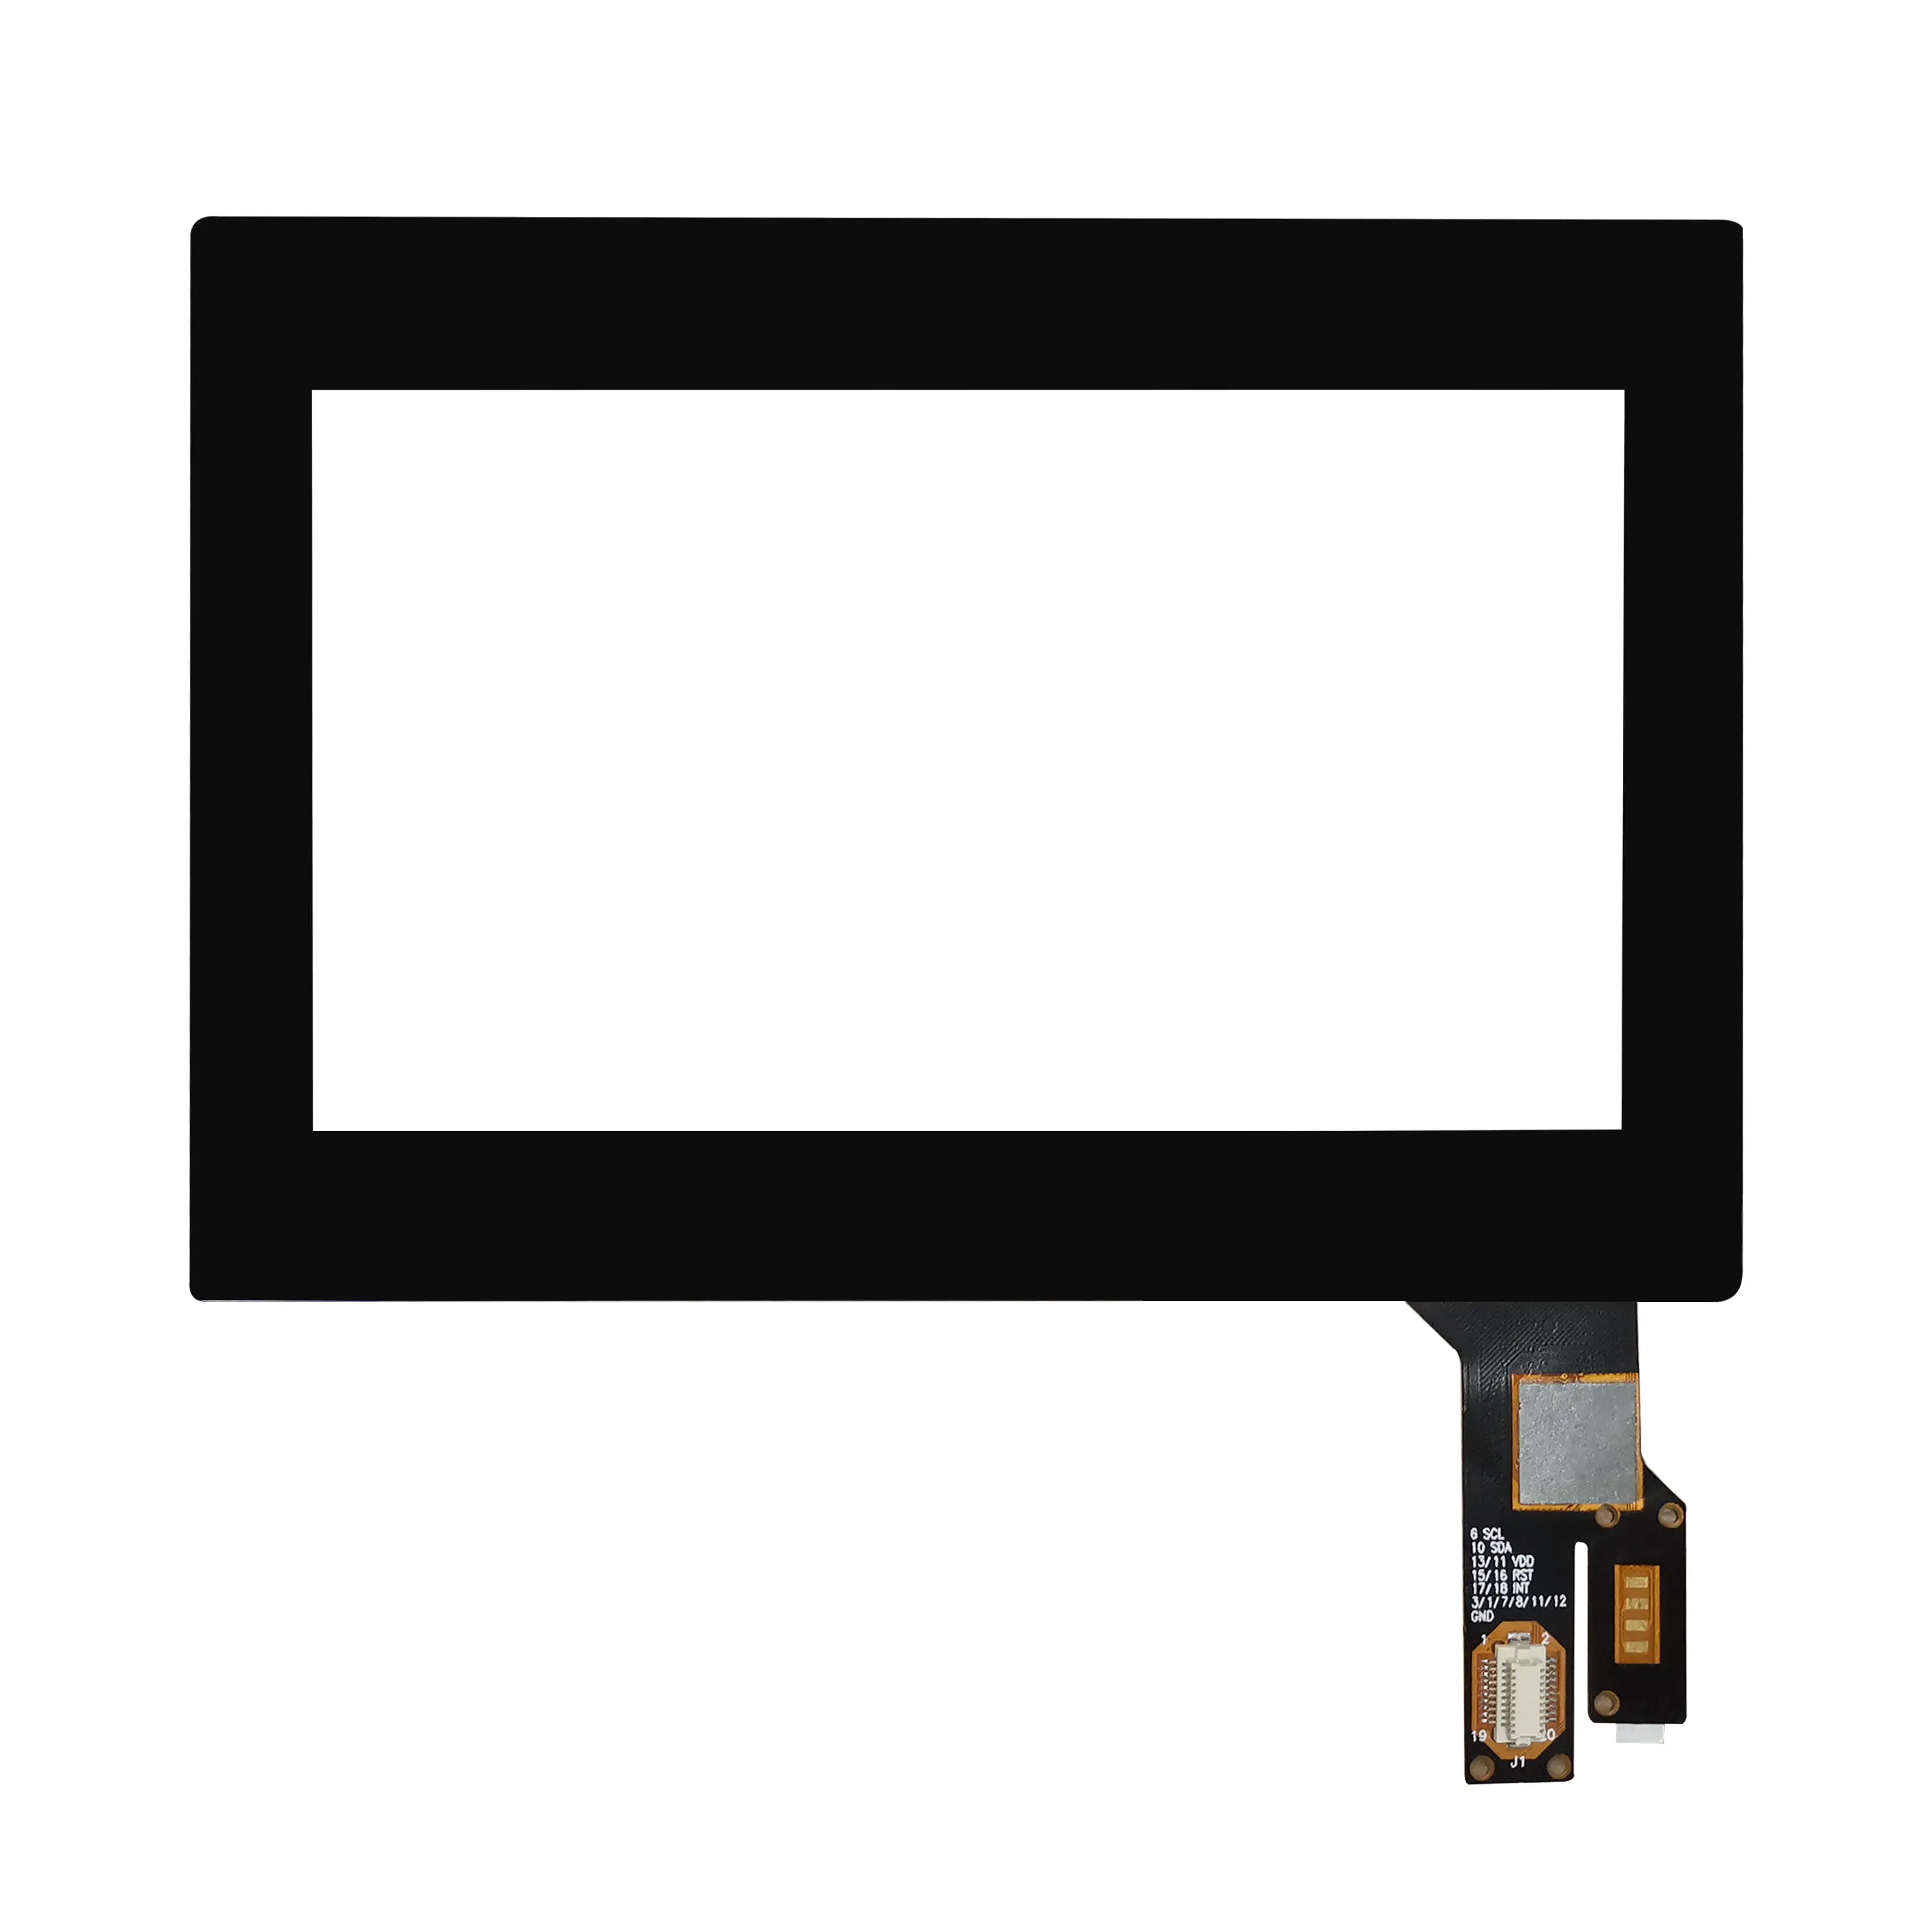 Sovrapposizioni del pannello Touch Screen capacitivo Multi Touch da 4.3 pollici personalizzate di piccole dimensioni con Focaltech Goodix ILITEK